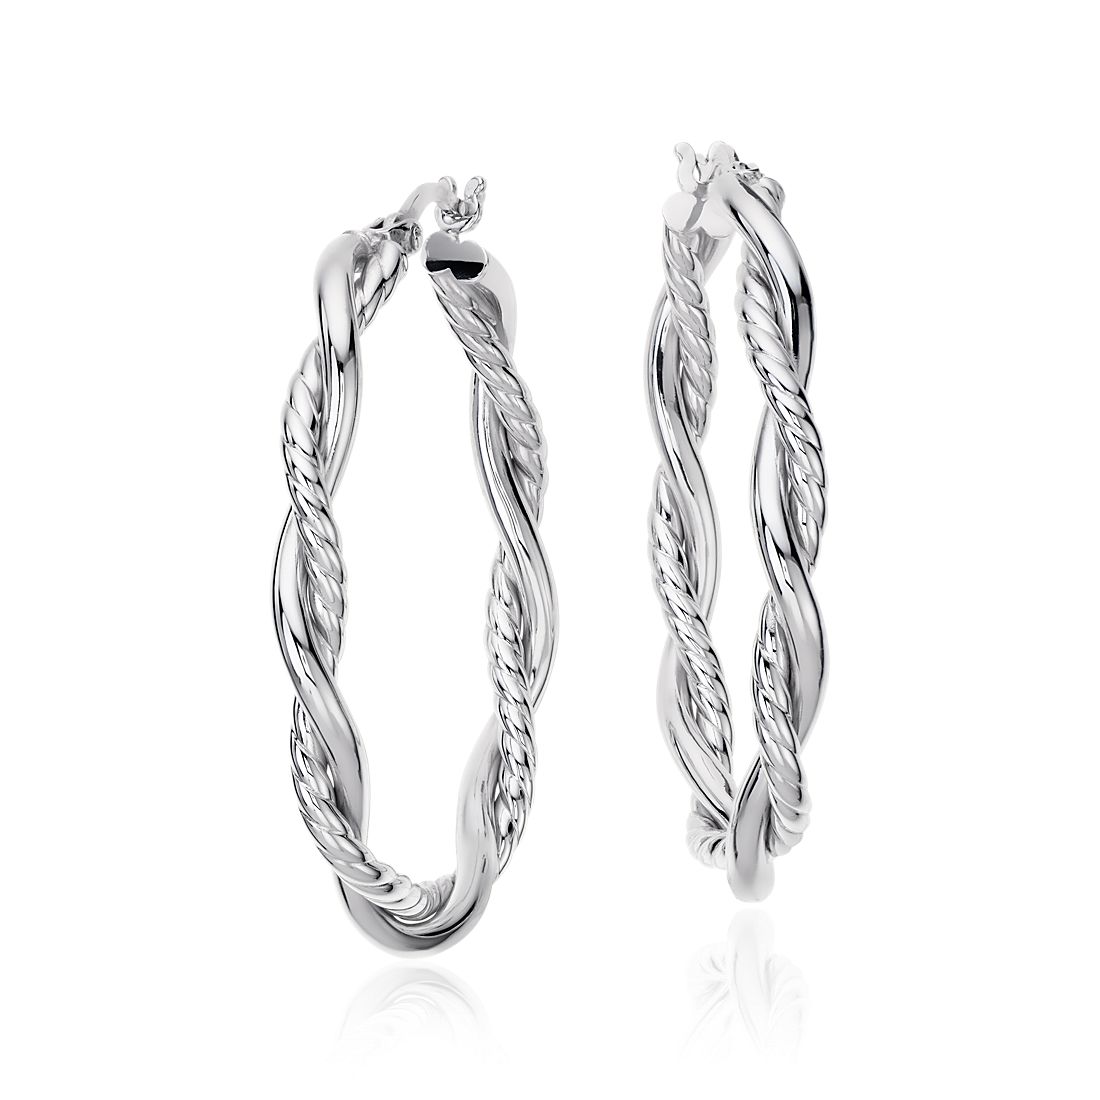 Intertwined Oval Hoop Earrings in Sterling Silver